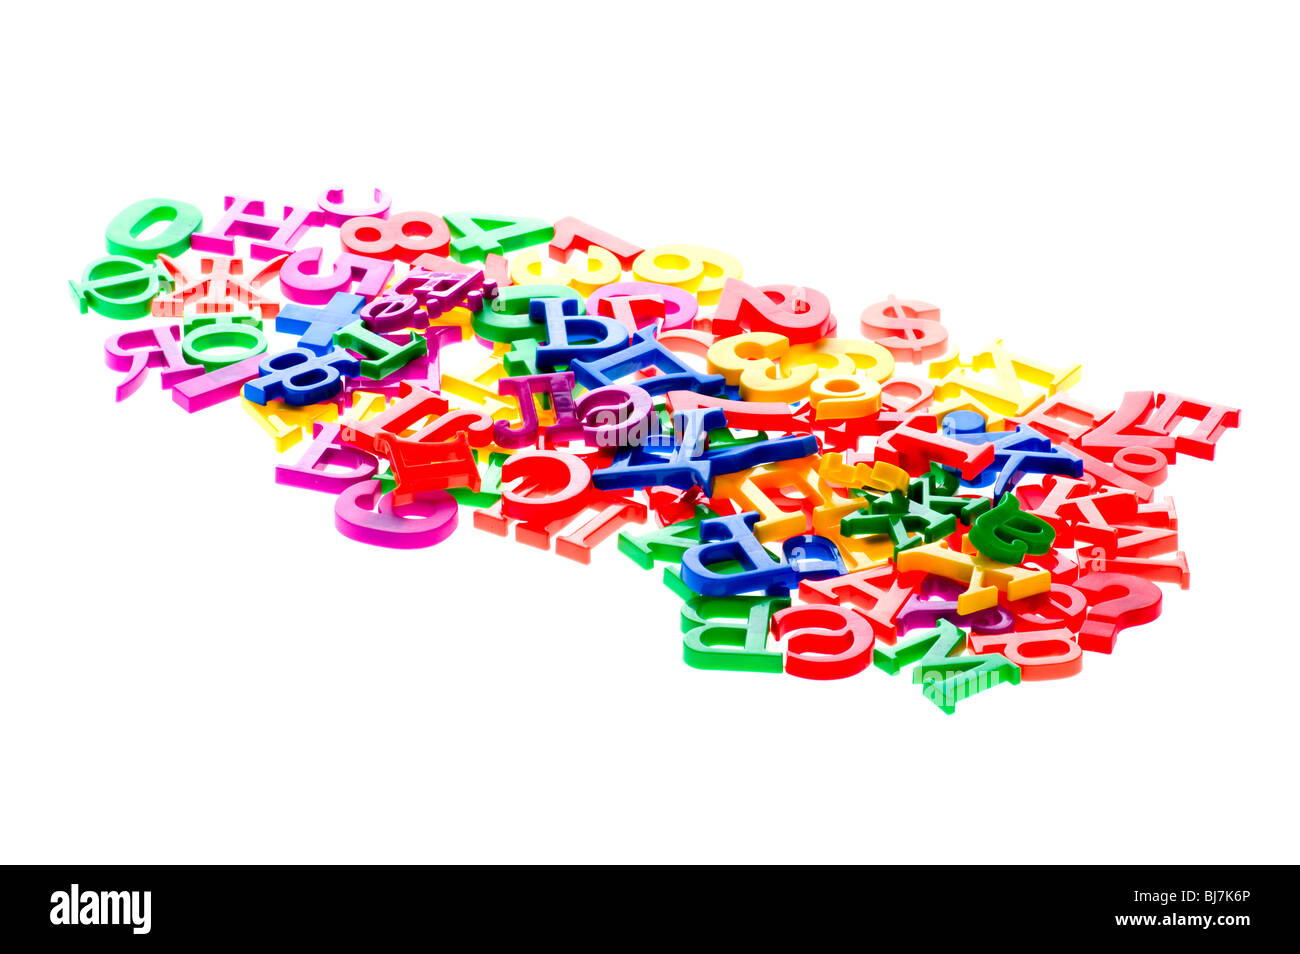 Objekt auf weiß - Spielzeug aus Kunststoff-Buchstaben und Zahlen Stockfoto